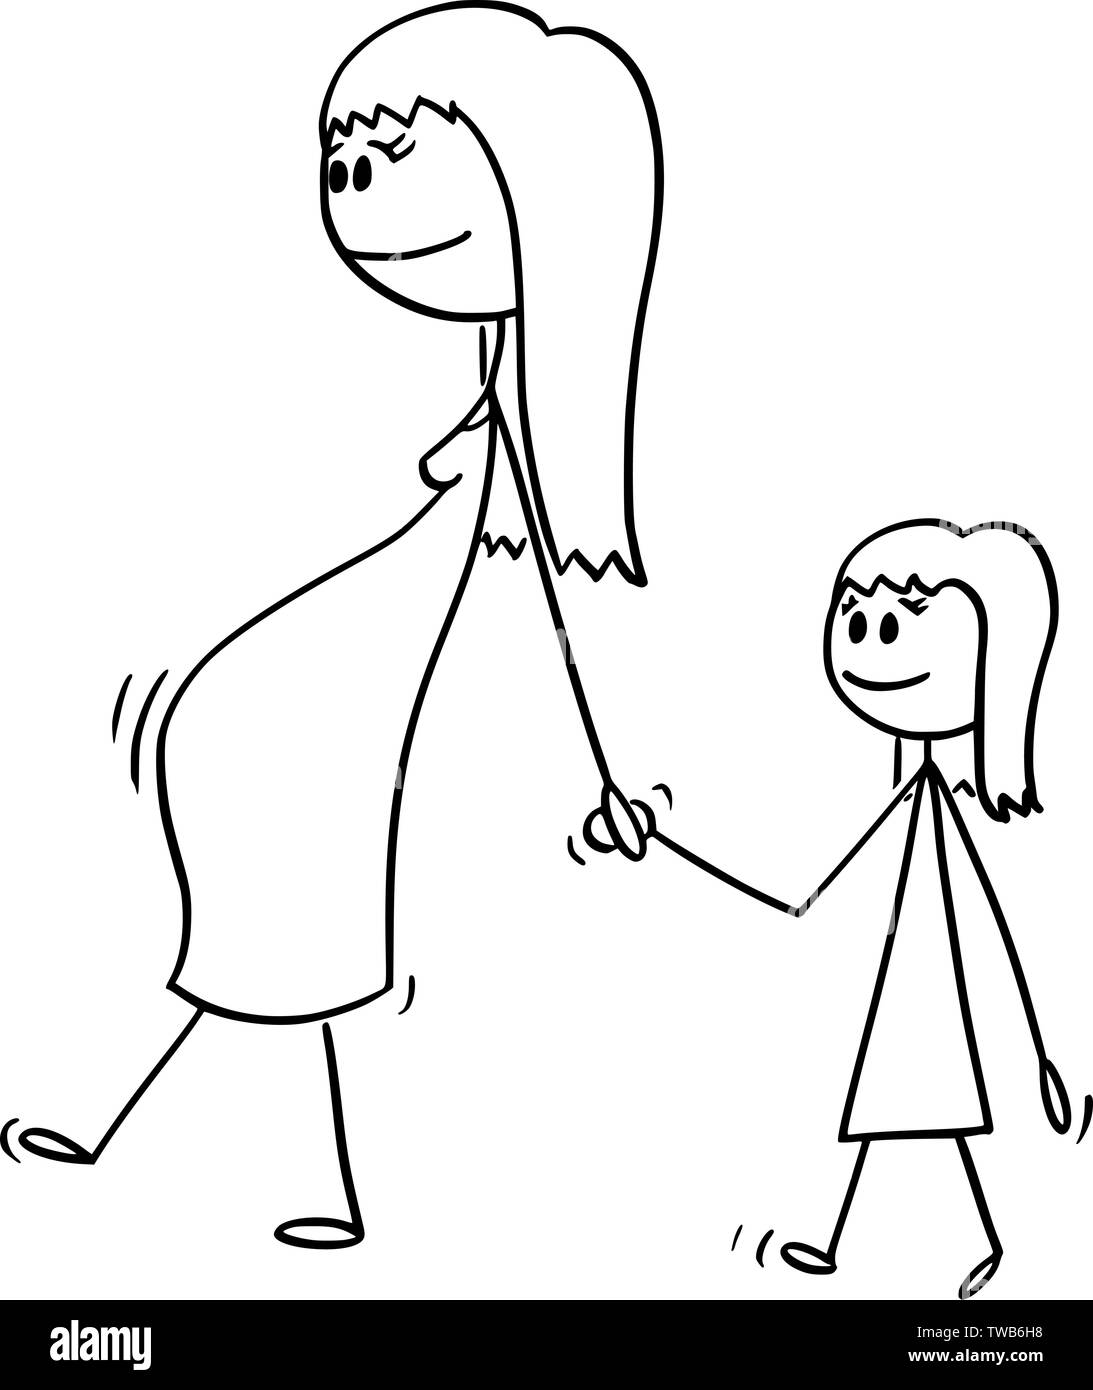 Vector cartoon stick figure dessin illustration conceptuelle de femme enceinte ou mère ou maman avec petite fille ou une fille. Ils sont à pied et tenir la main. Illustration de Vecteur